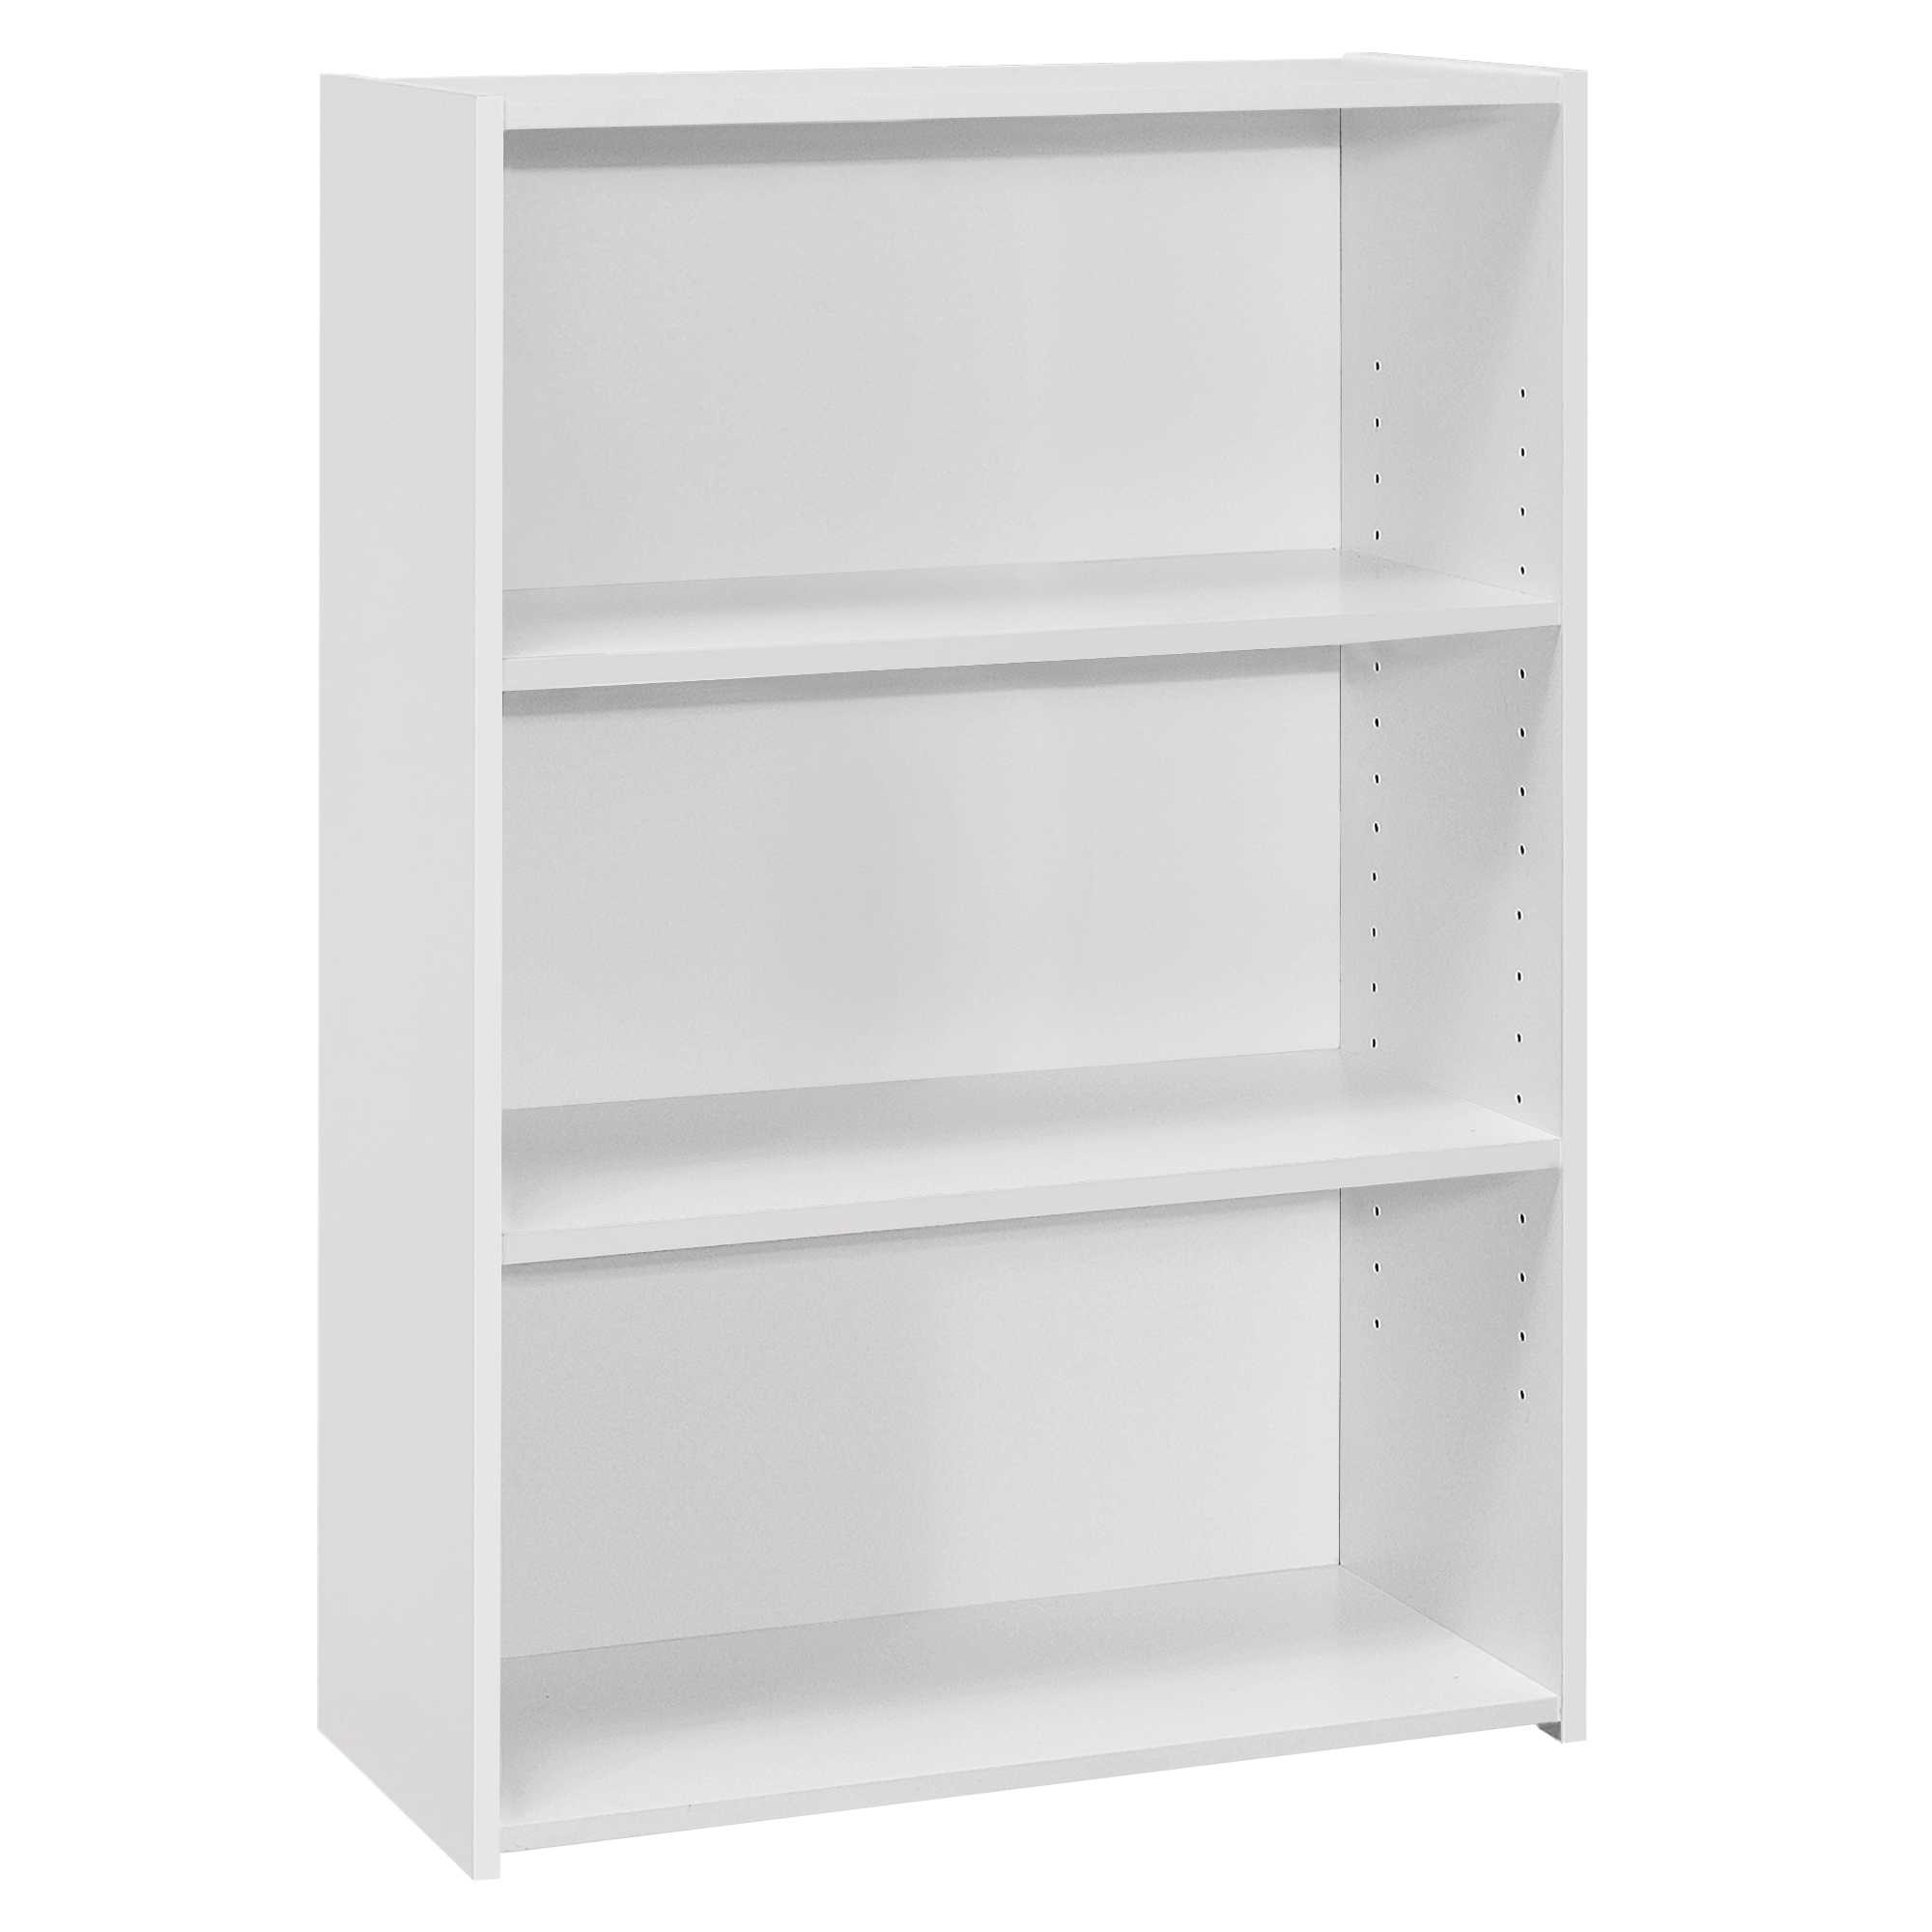 11.75" x 24.75" x 35.5" White 3 Shelves Bookcase